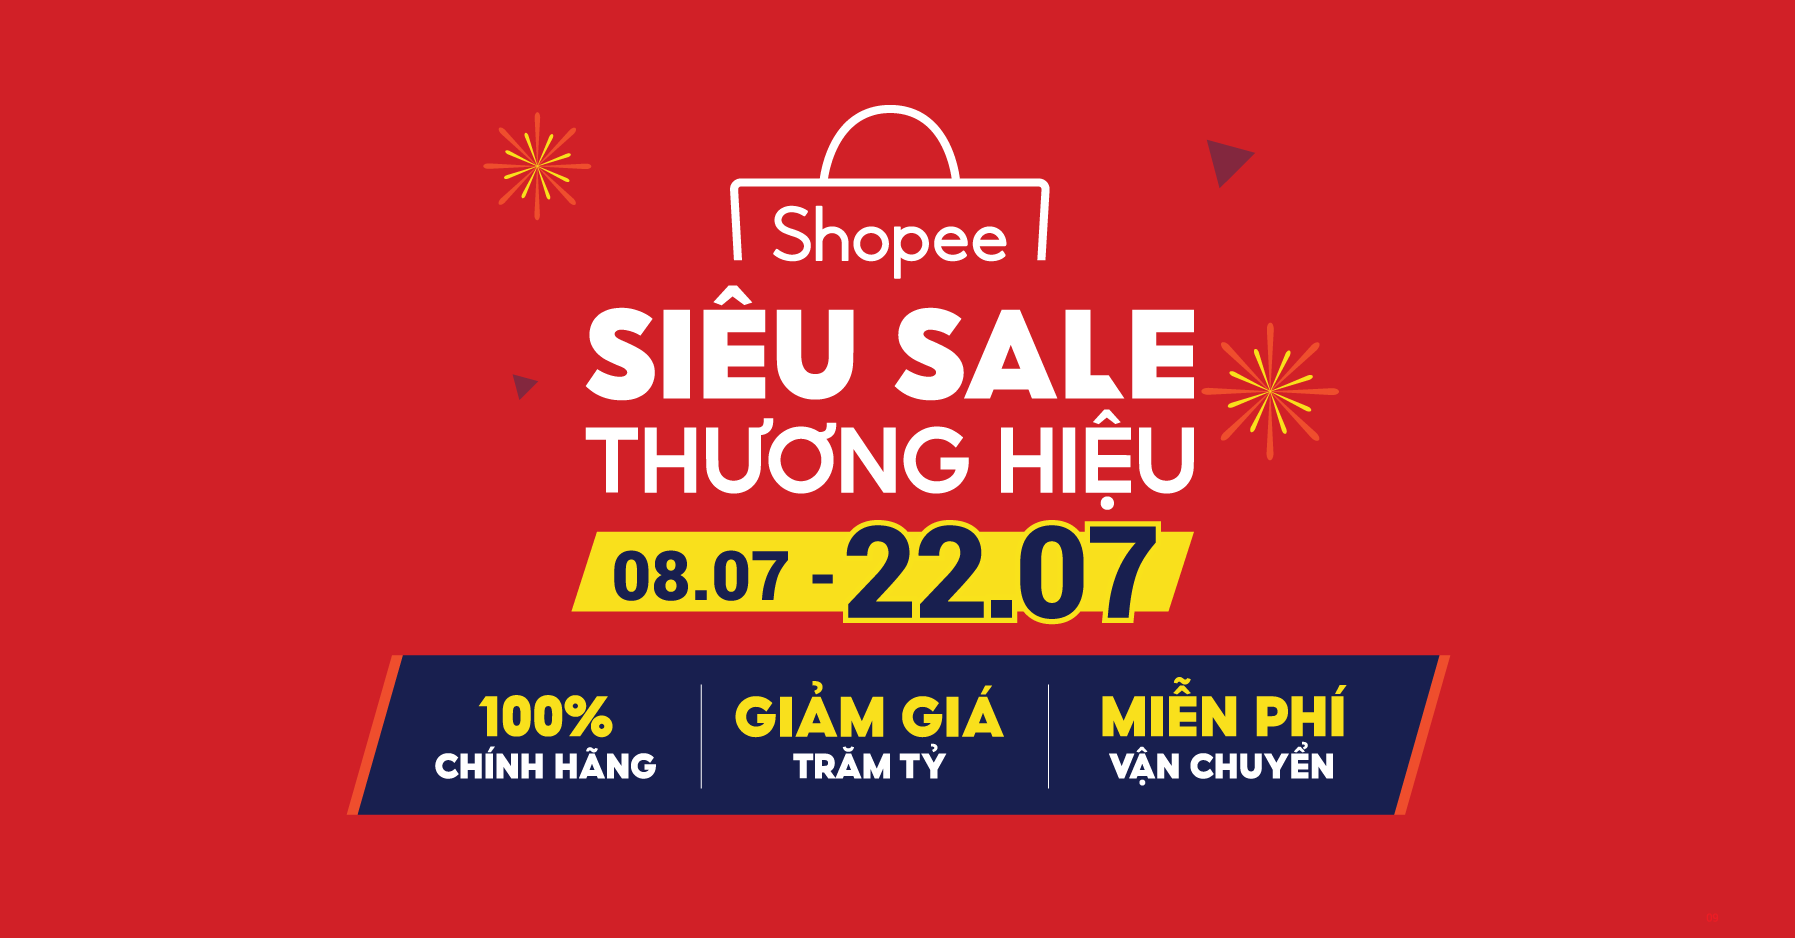 Cần gì đợi lương khi Shopee giảm giá trăm tỷ: Vừa siêu sale thương hiệu vừa miễn phí vận chuyển - 1